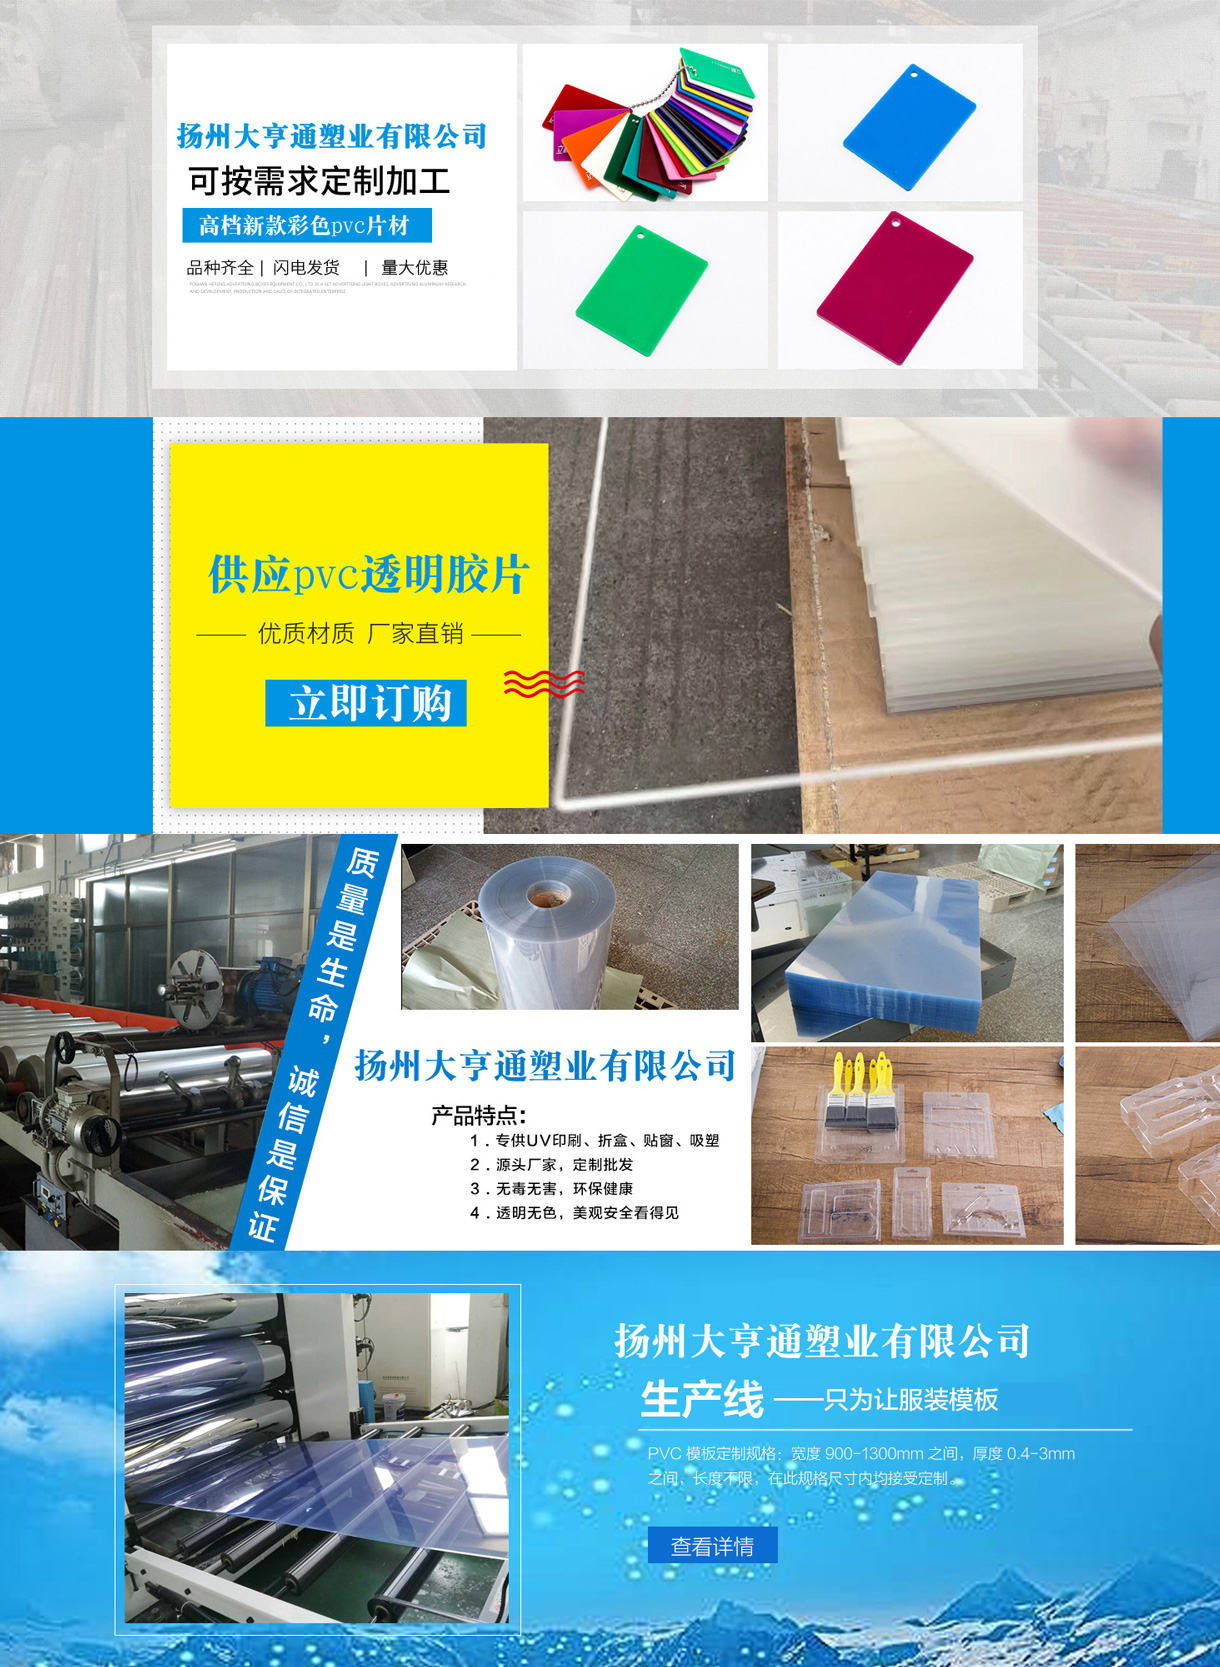 扬州大亨通塑业有限公司-中国国际包装展-中国包装容器展